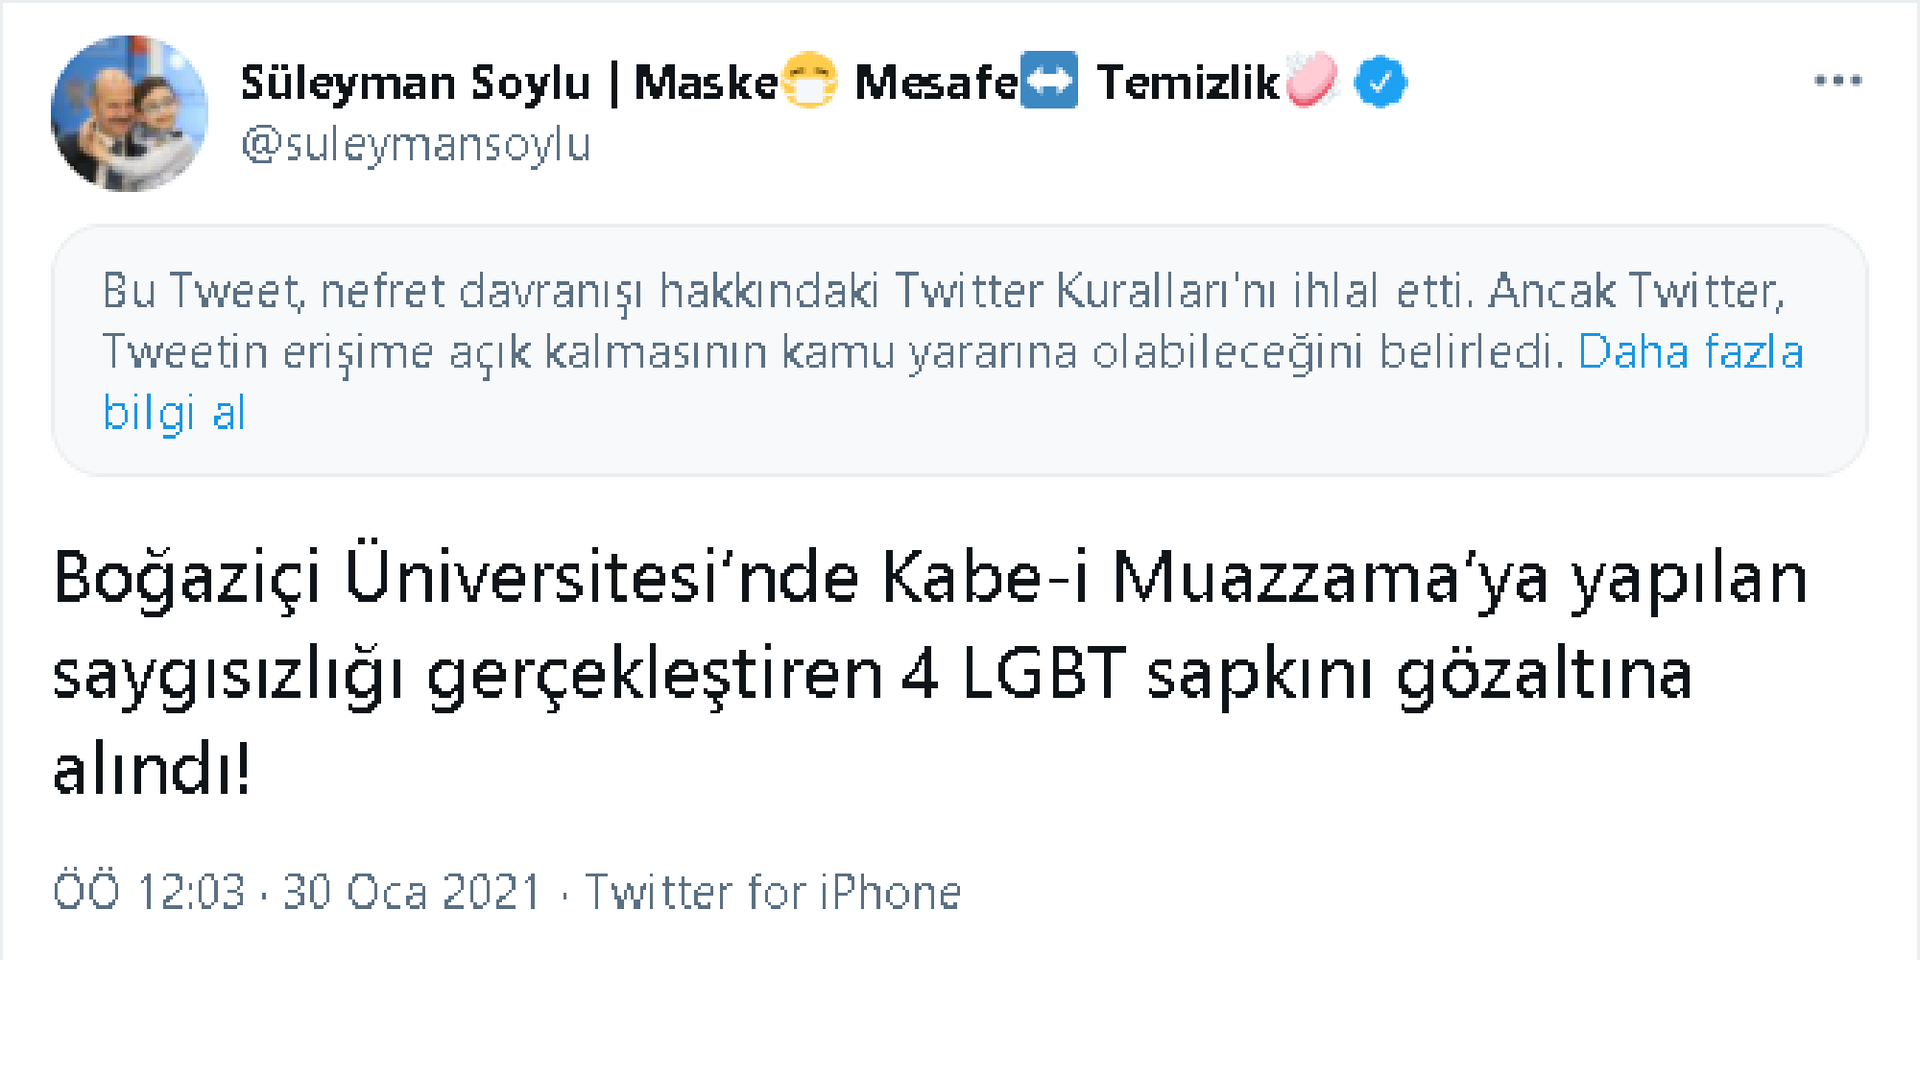 Twitter'dan Soylu'nun paylaşımına 'nefret söylemi' uyarısı - Sputnik Türkiye, 1920, 02.02.2021